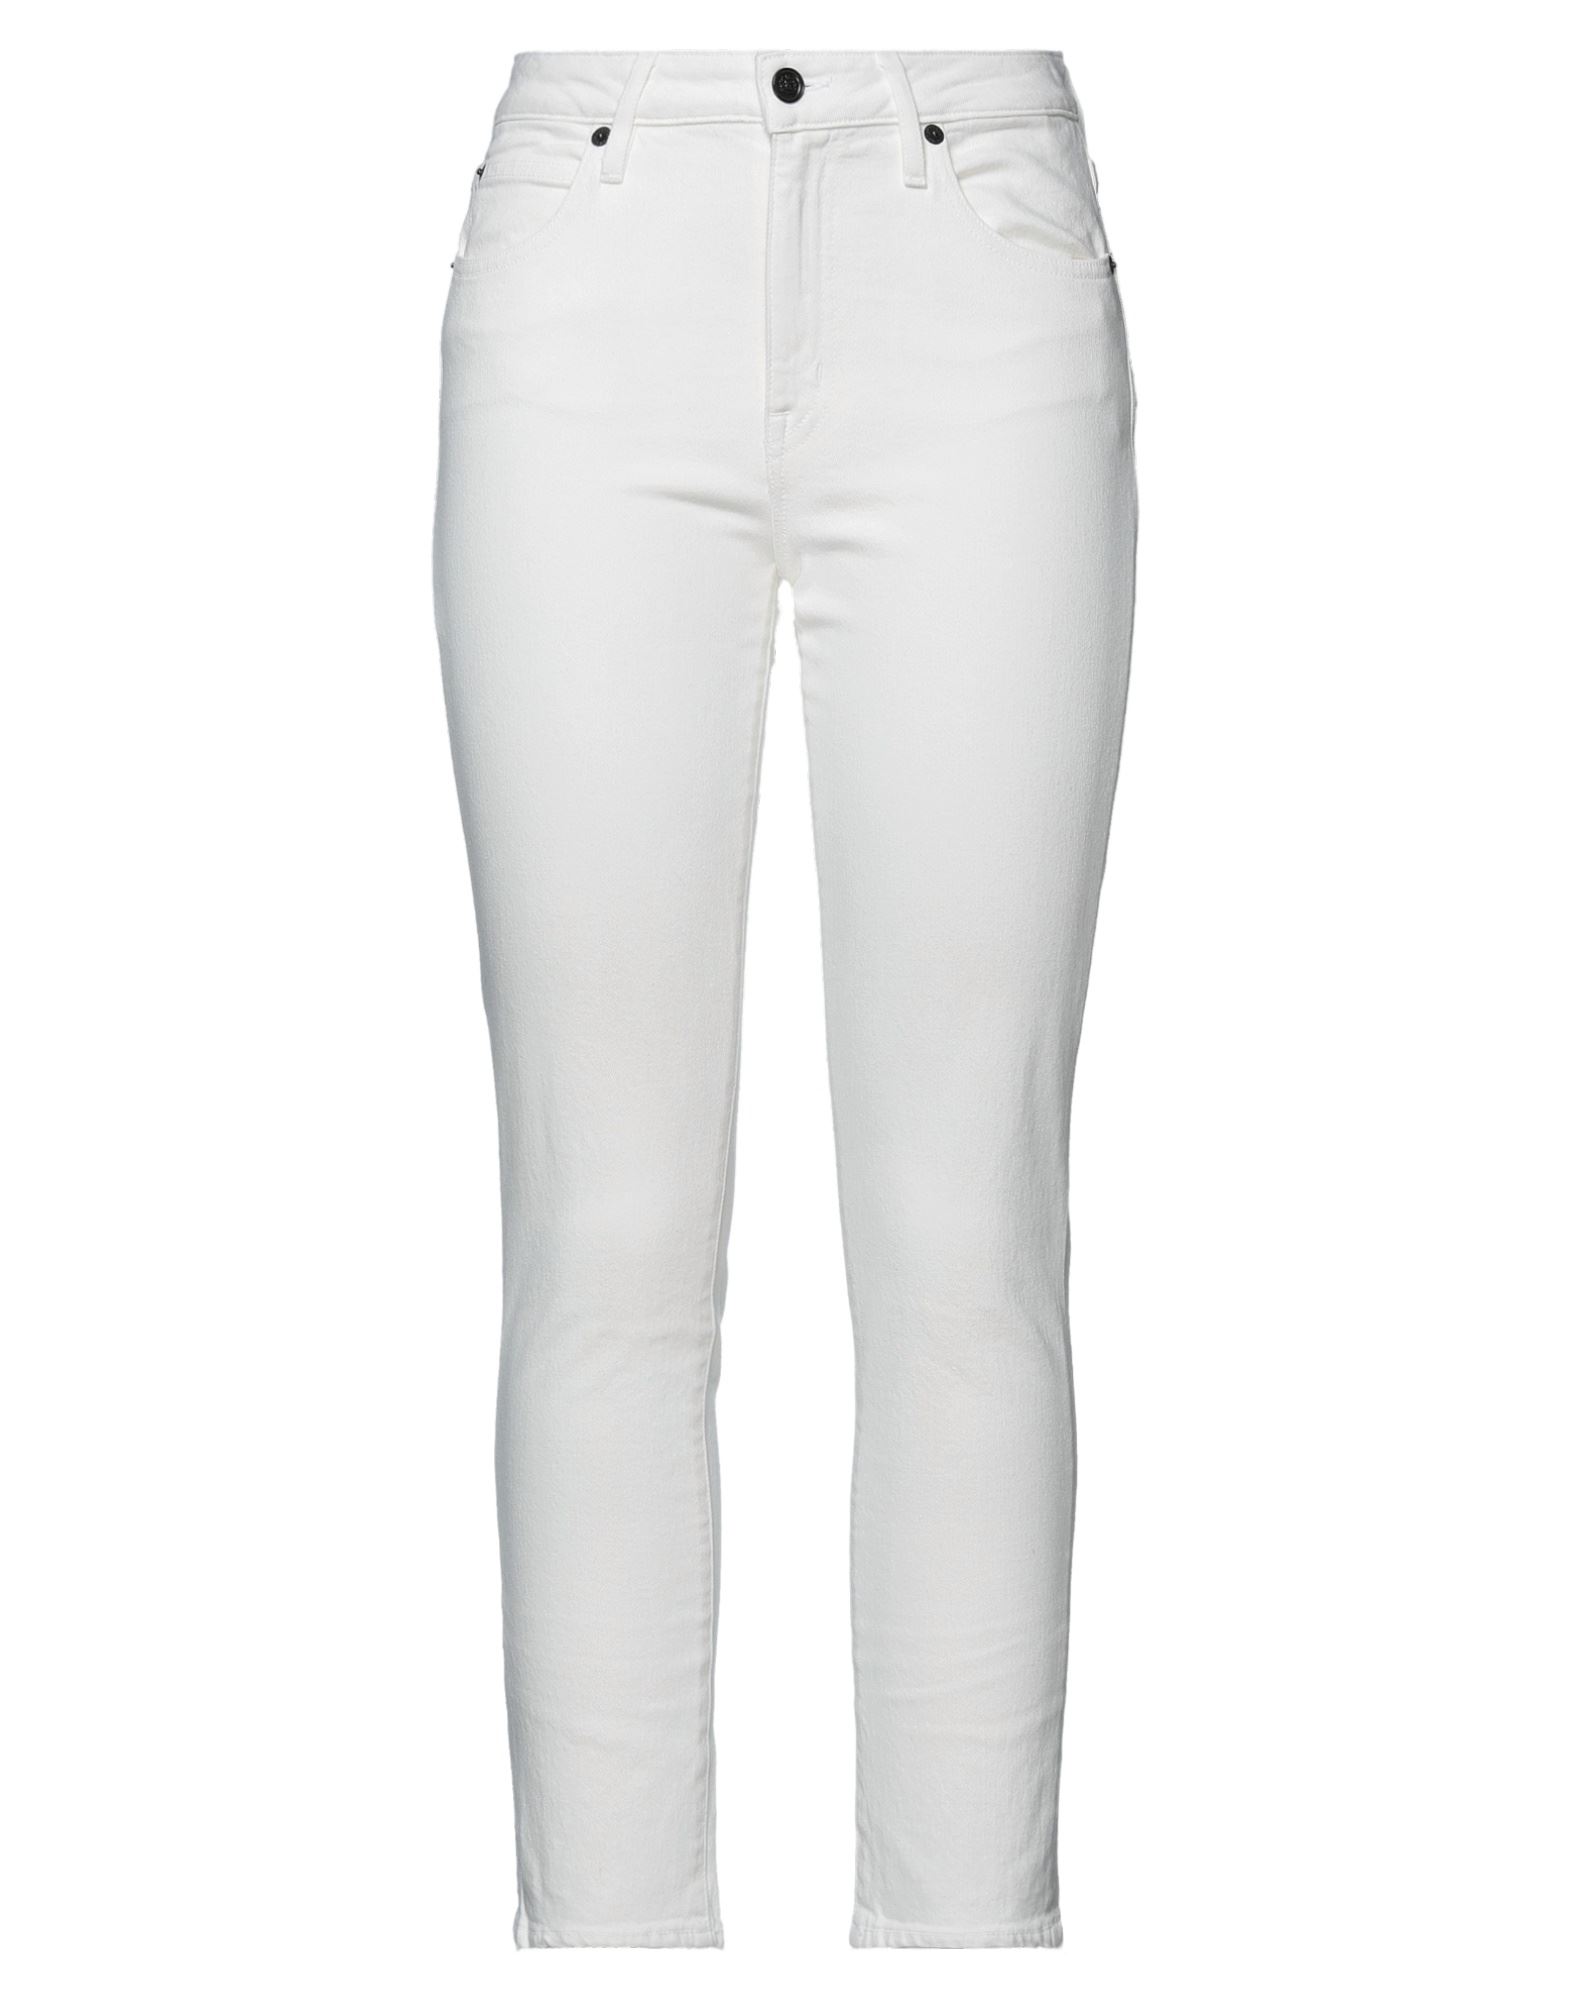 Shop Slvrlake Woman Jeans White Size 30 Cotton, Elastane